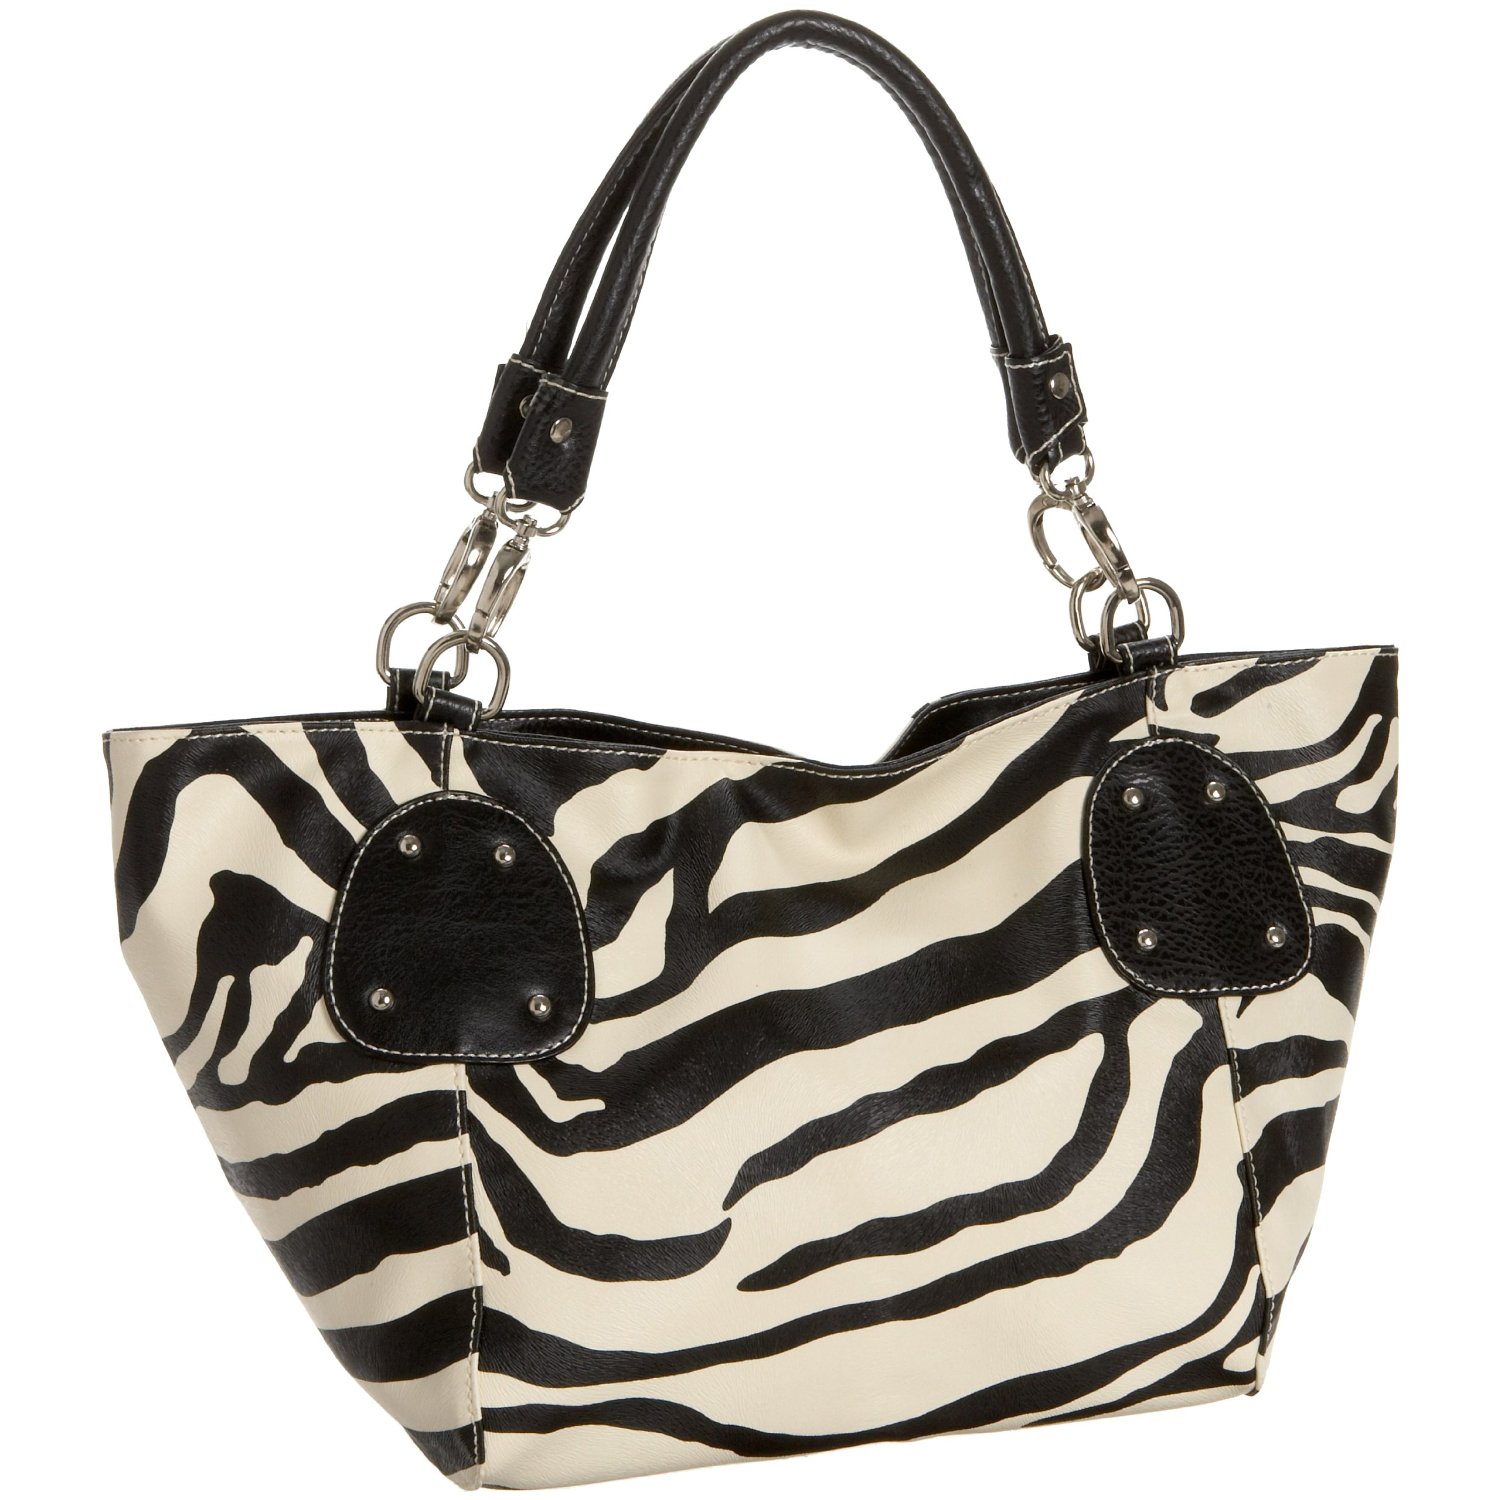 My New Handbag: Fashion Handbag Trends of 2010: The Animal Print And ...